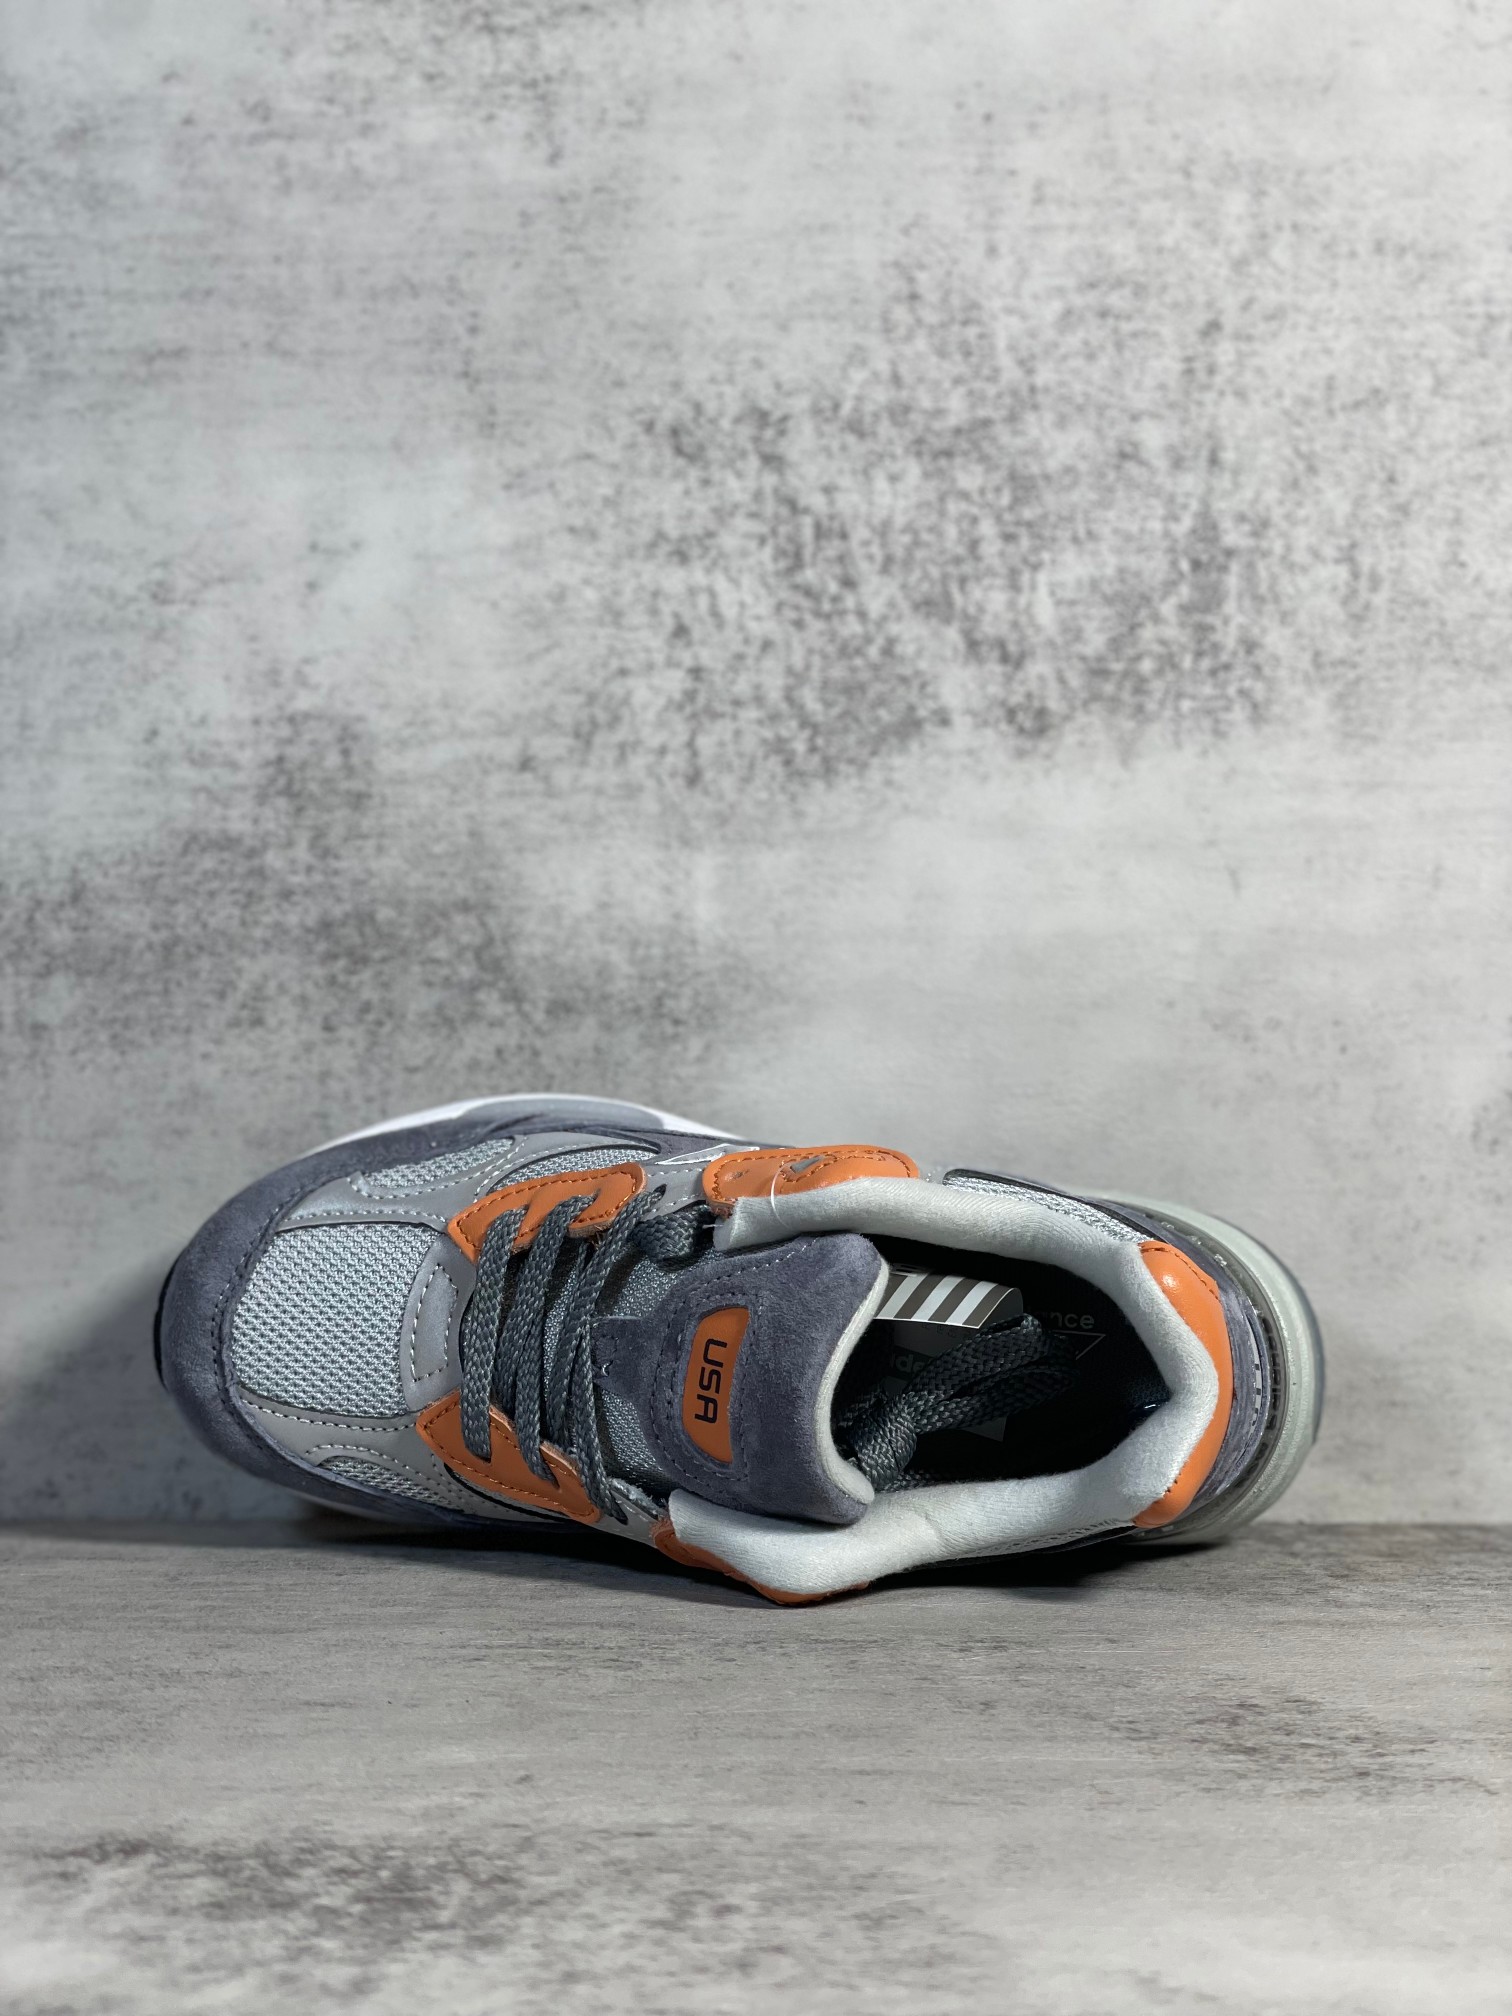 NB992联名款M992TS外贸纯原版全码出货深蓝橙全市场唯一原鞋开发全鞋使用原材料打造大底单独开模打造